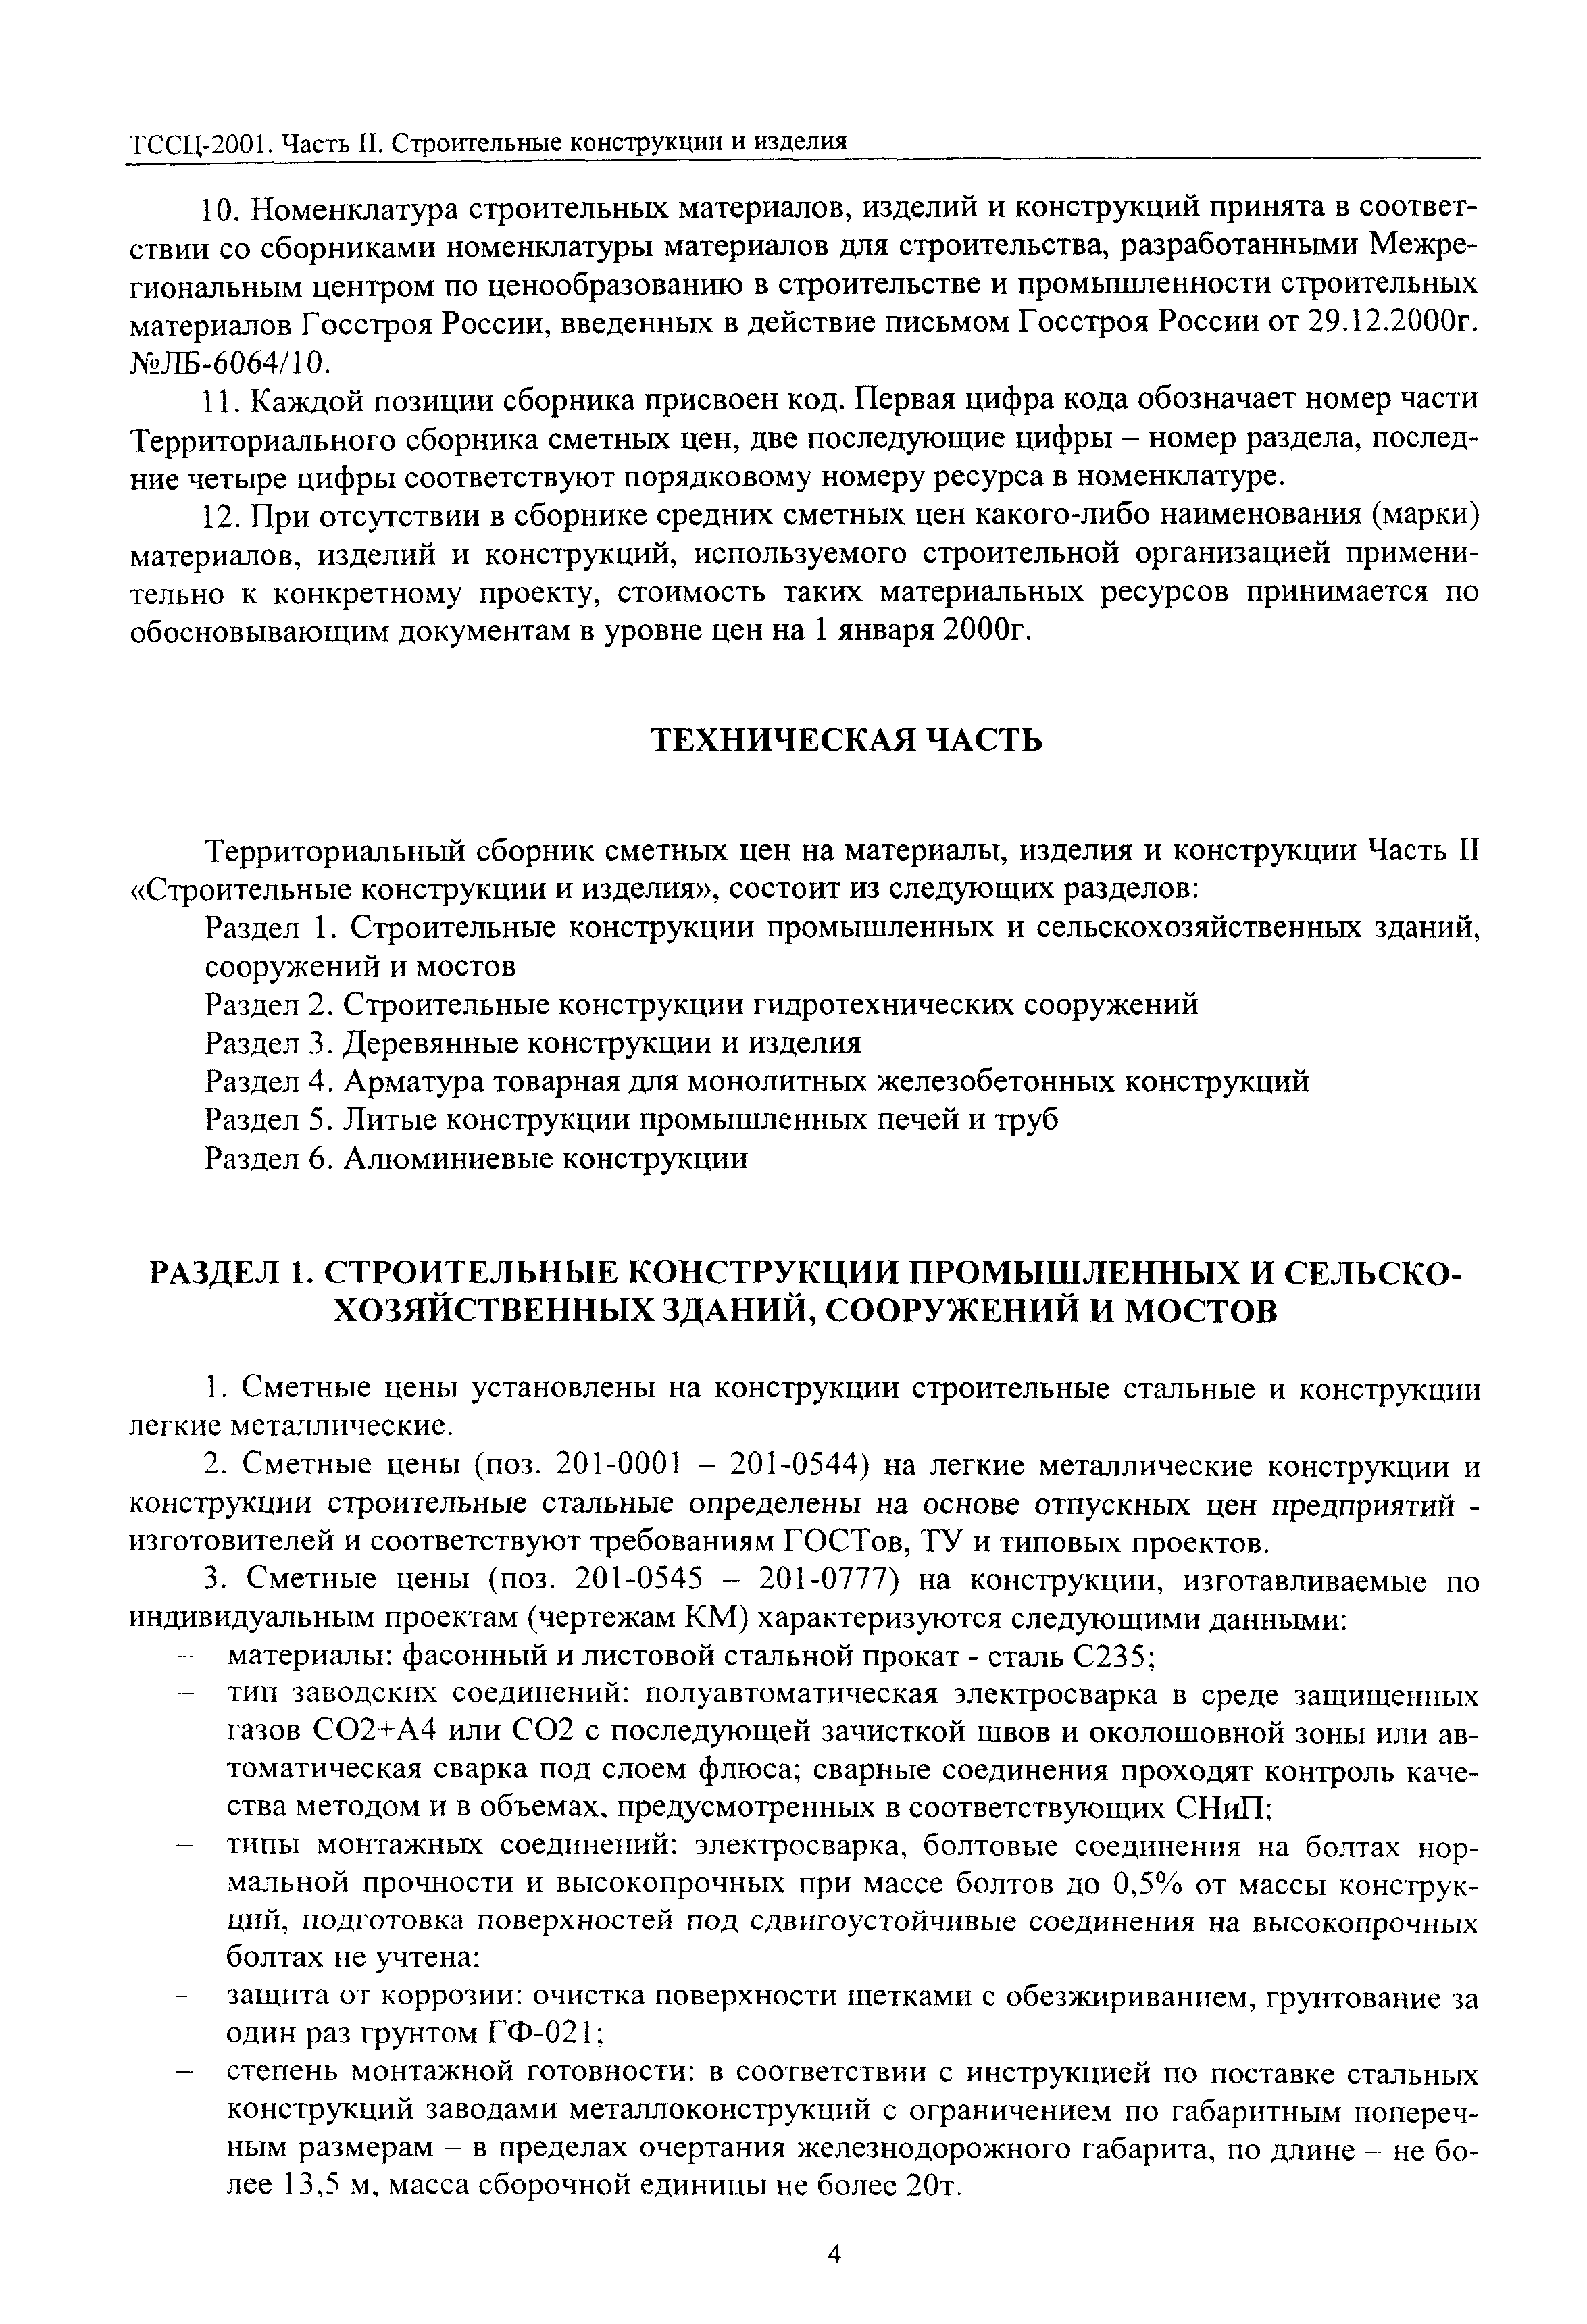 ТССЦ Воронежская область 2001